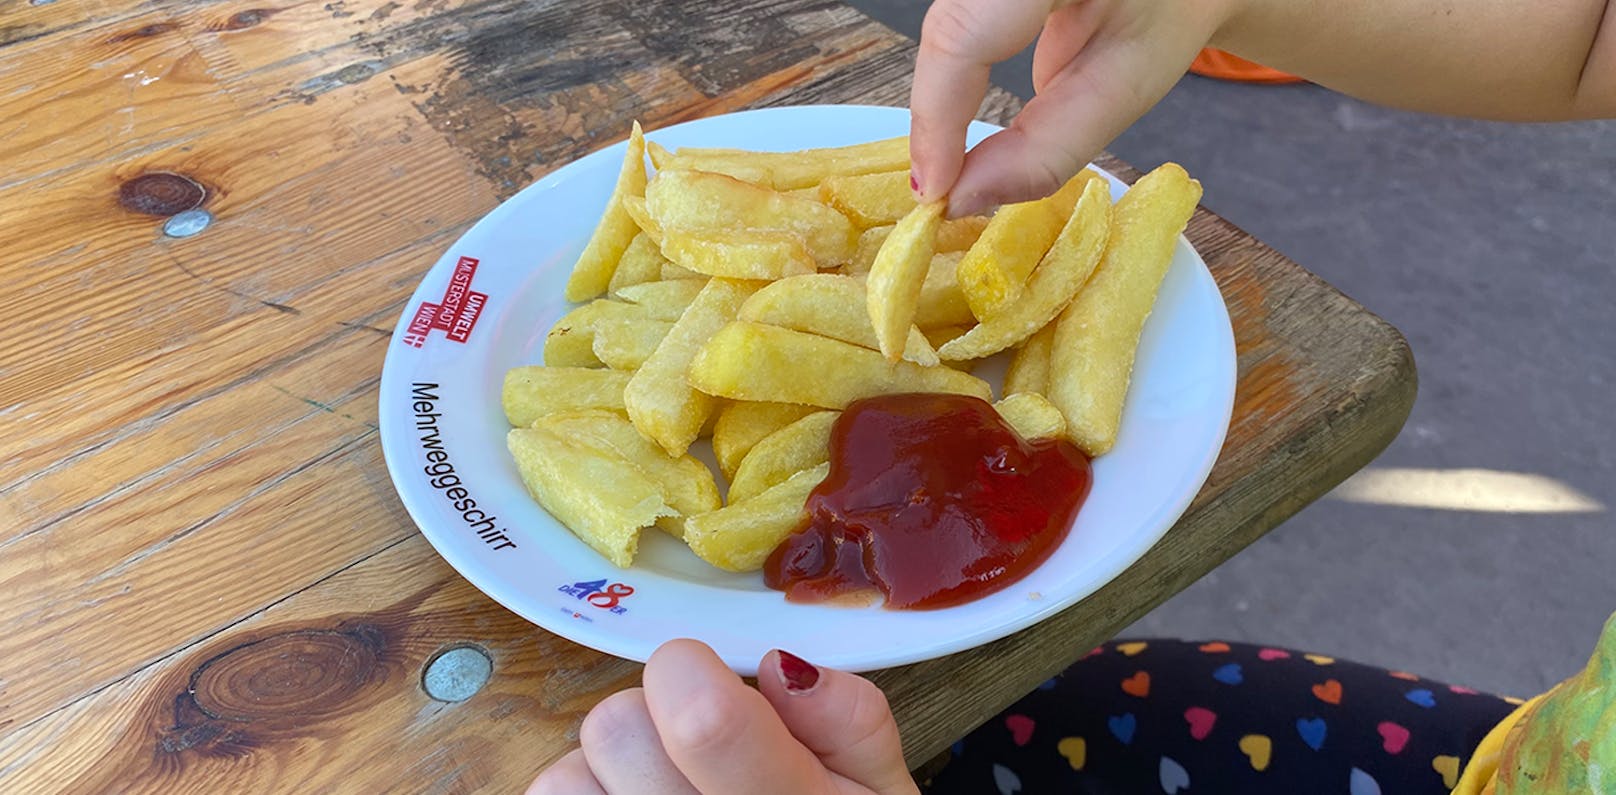 Für diese Pommes-Portion wurden 4,50 € verlangt (Kinderhand zum Größenvergleich).